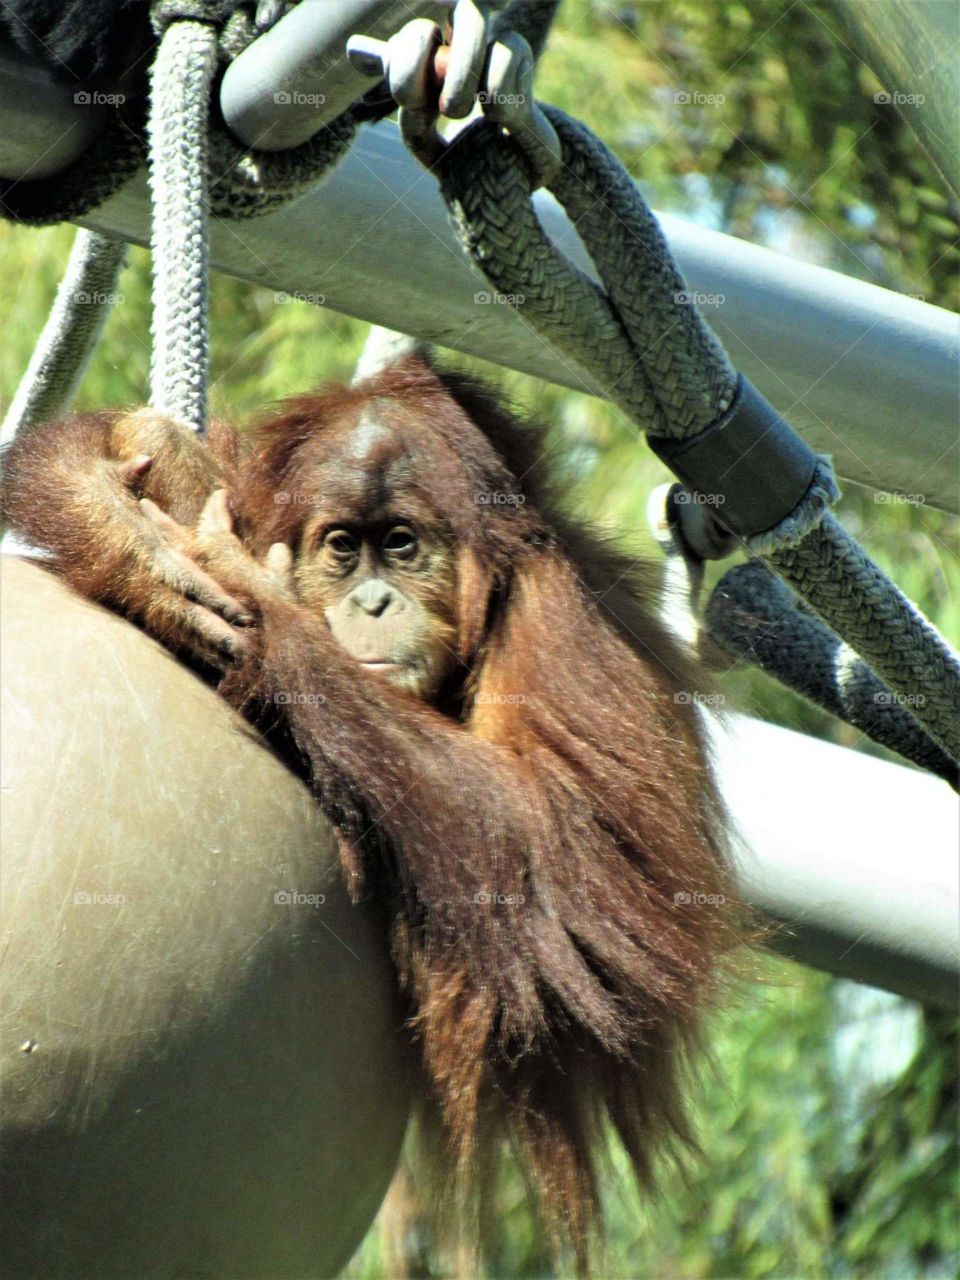 Orangutan just hanging out 